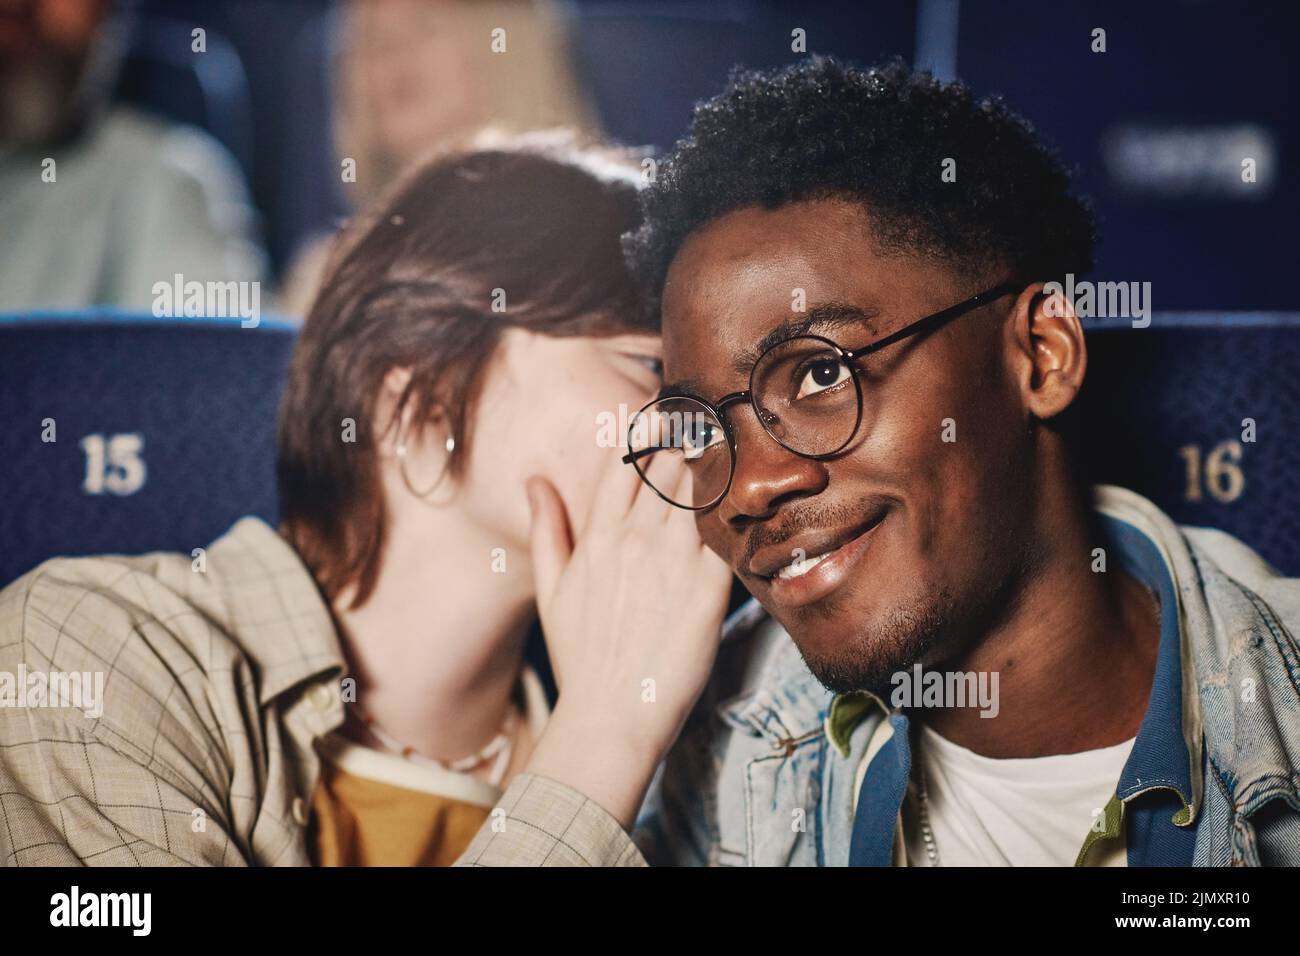 Primer plano de una joven mujer caucásica susurrando algo a su amiga negra mientras ve una película en el cine Foto de stock